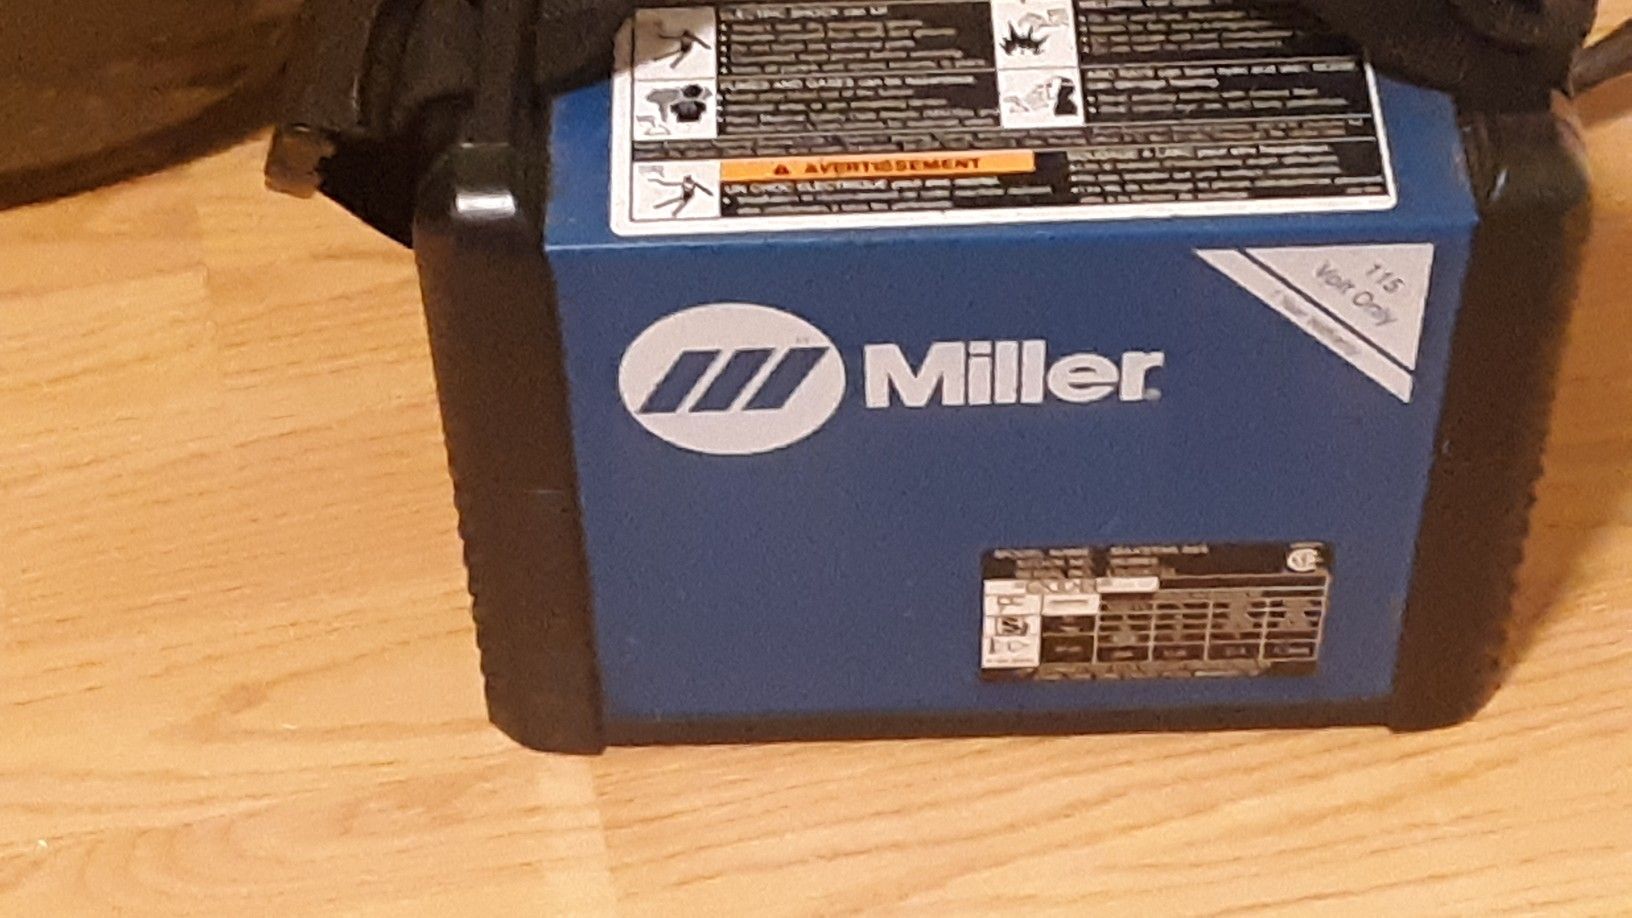 Miller backpack welder